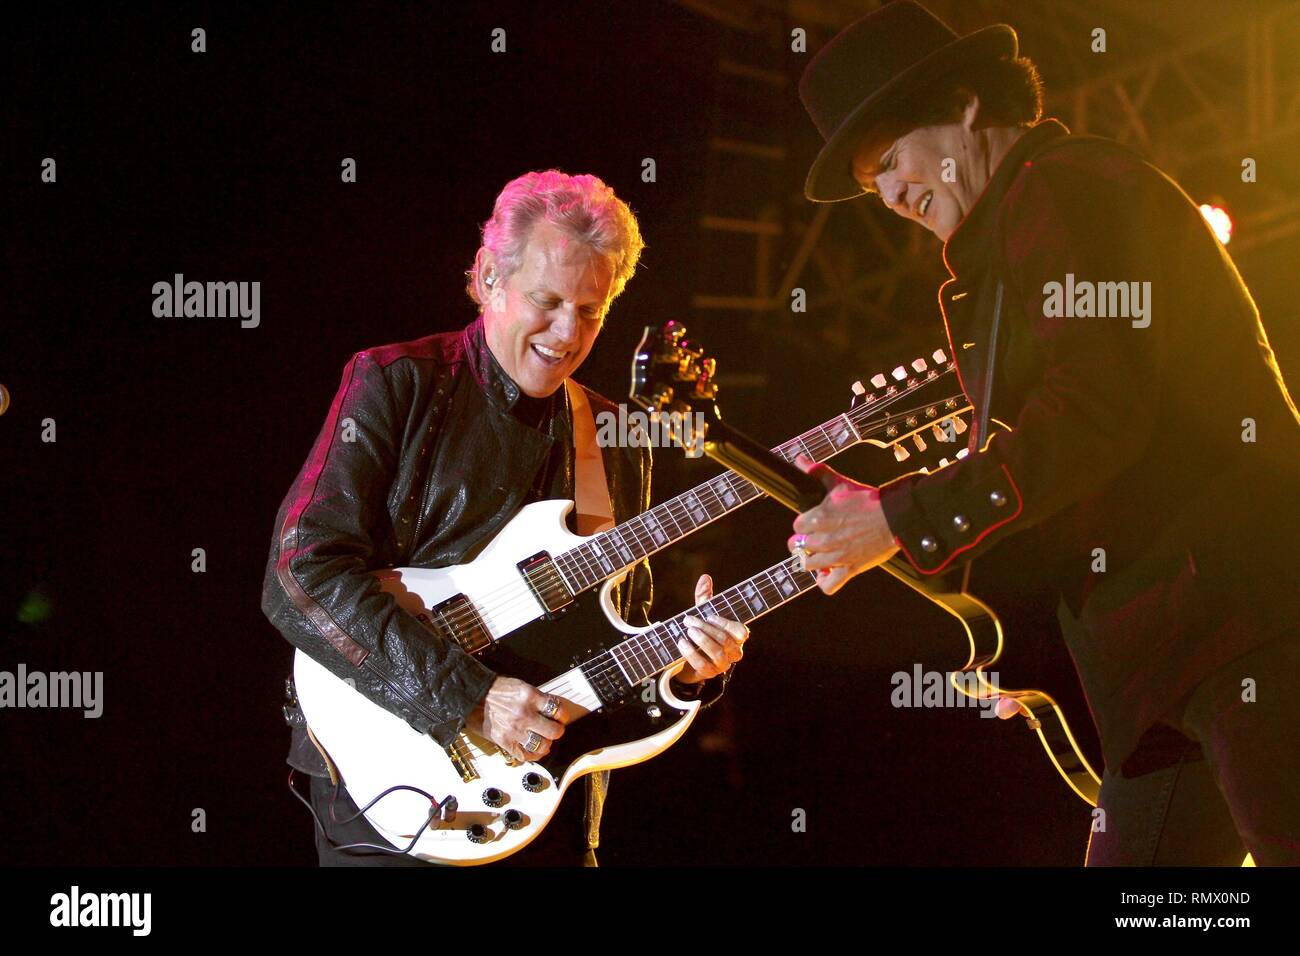 Cantante, compositore e chitarrista Don Felder, precedentemente delle aquile, è mostrato il palcoscenico durante una 'live' aspetto di concerto con con la sua band solista. Foto Stock